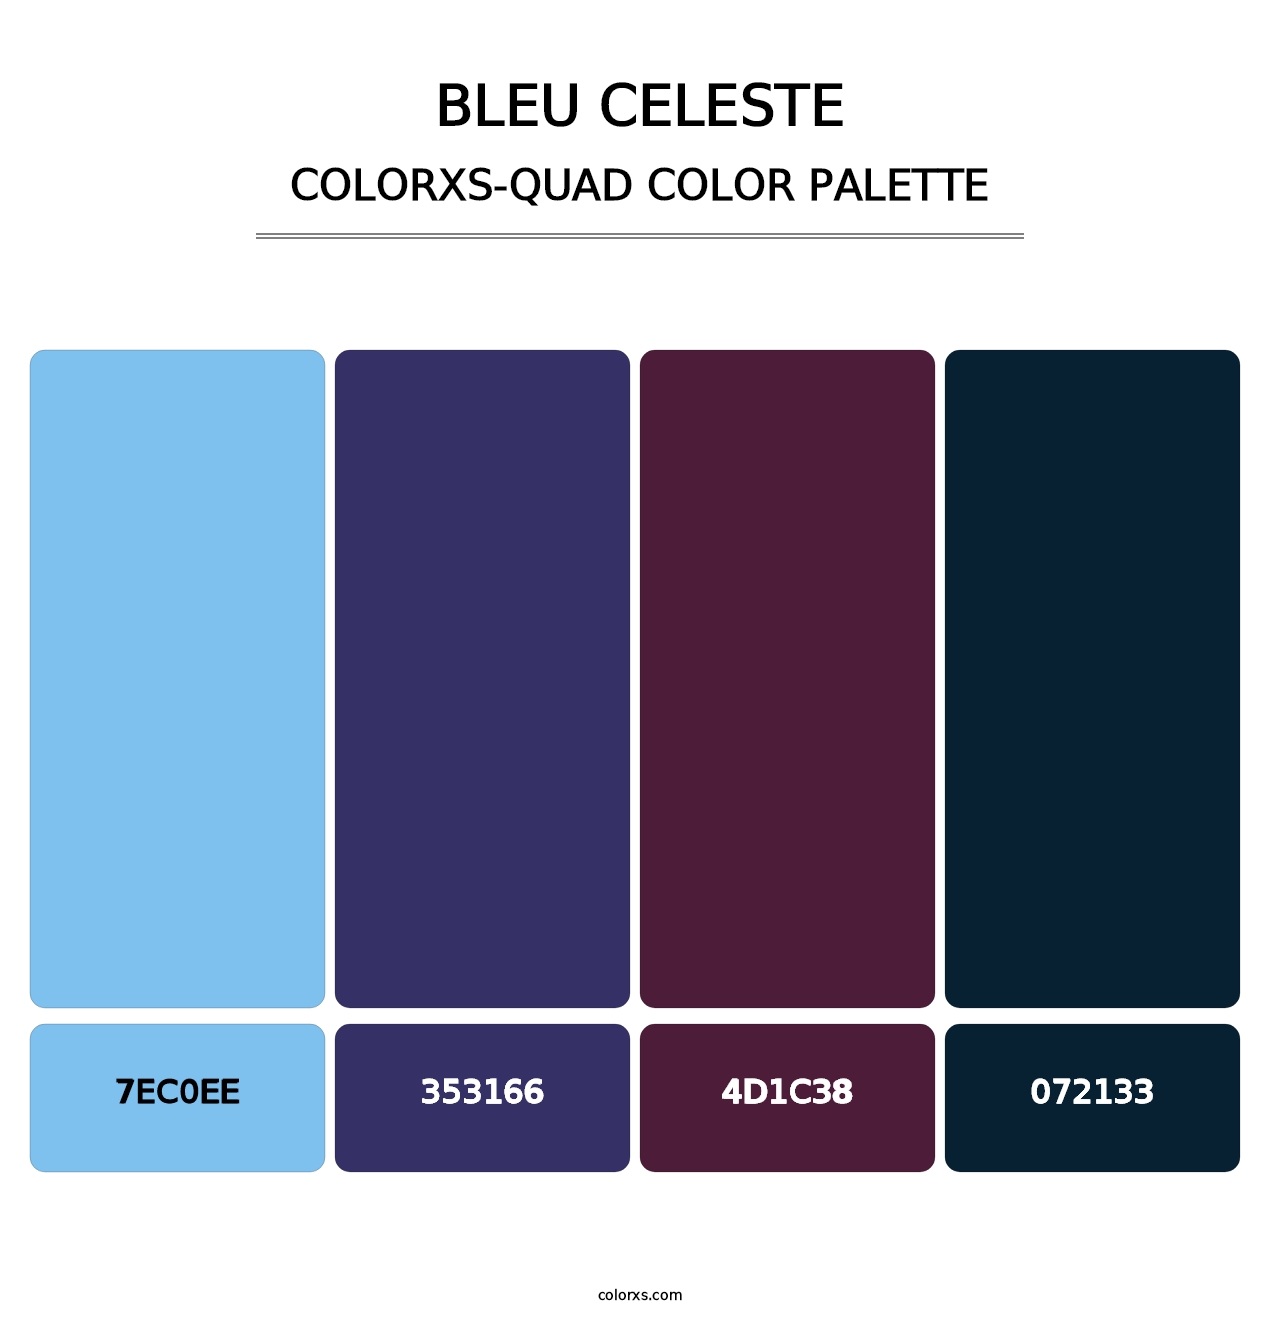 Bleu Celeste - Colorxs Quad Palette